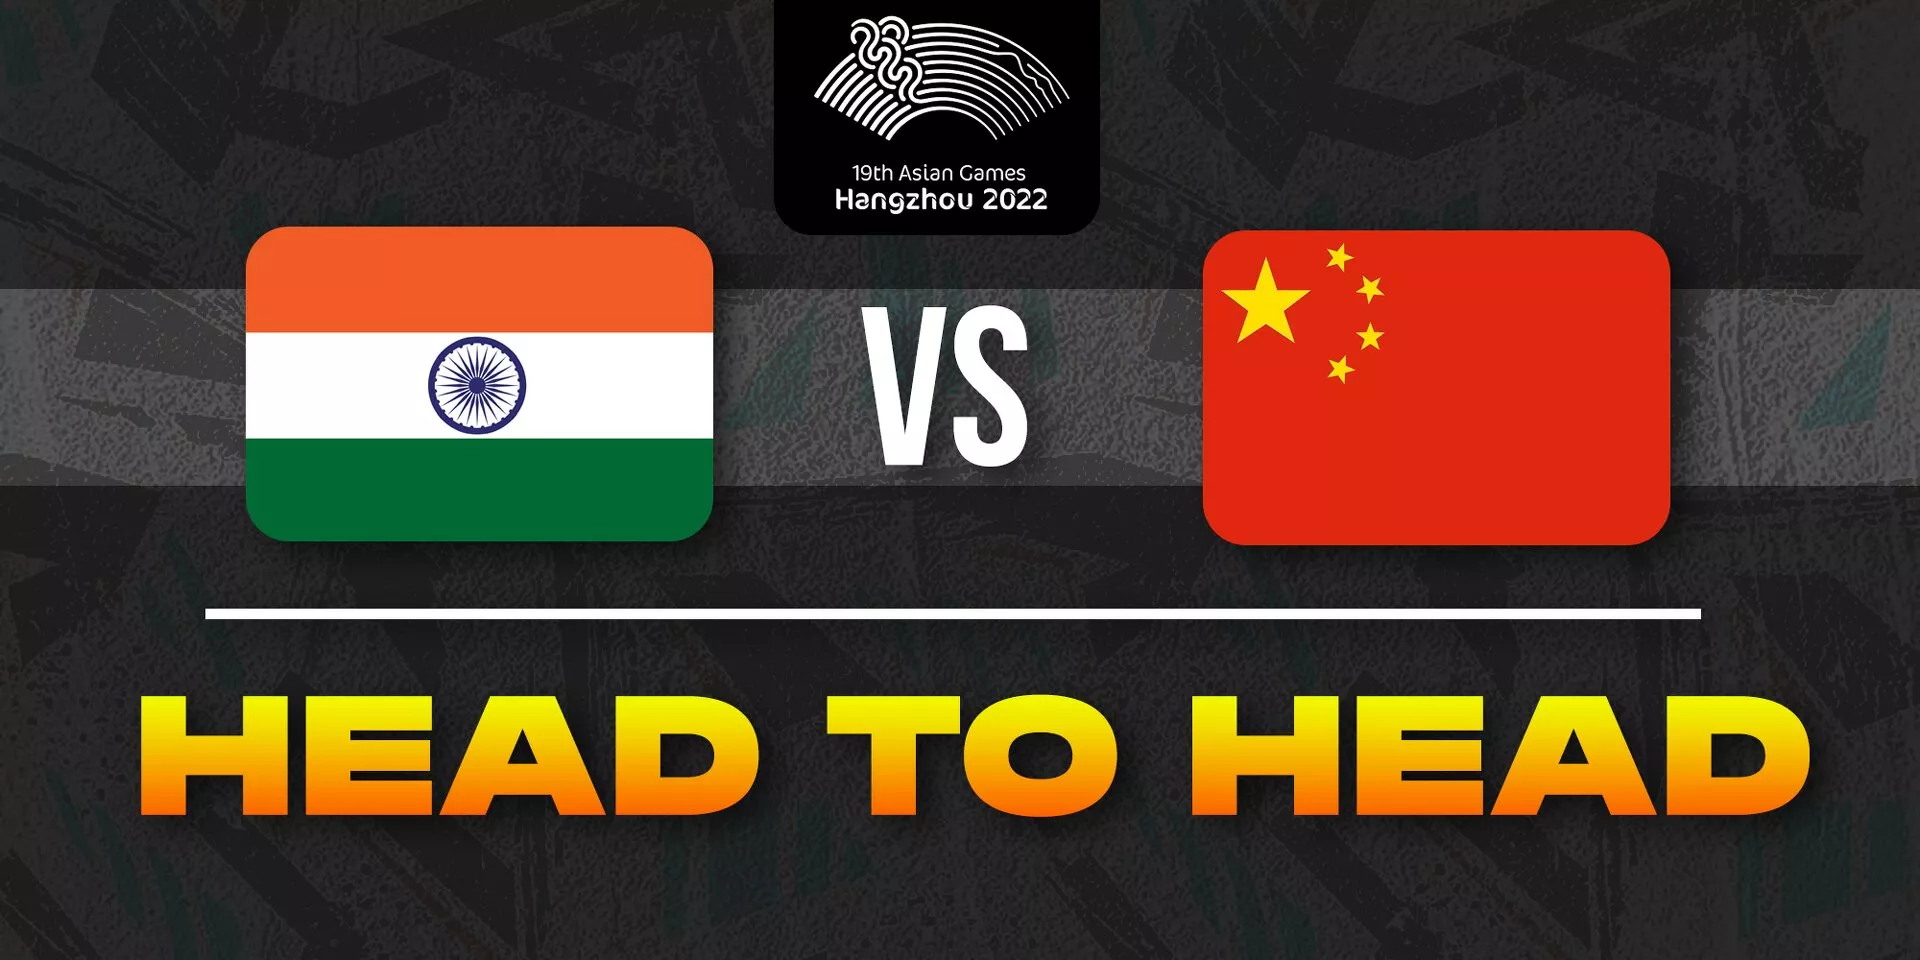 INDIA VS CHINA HEAD-TO-HEAD ASIAN GAMES